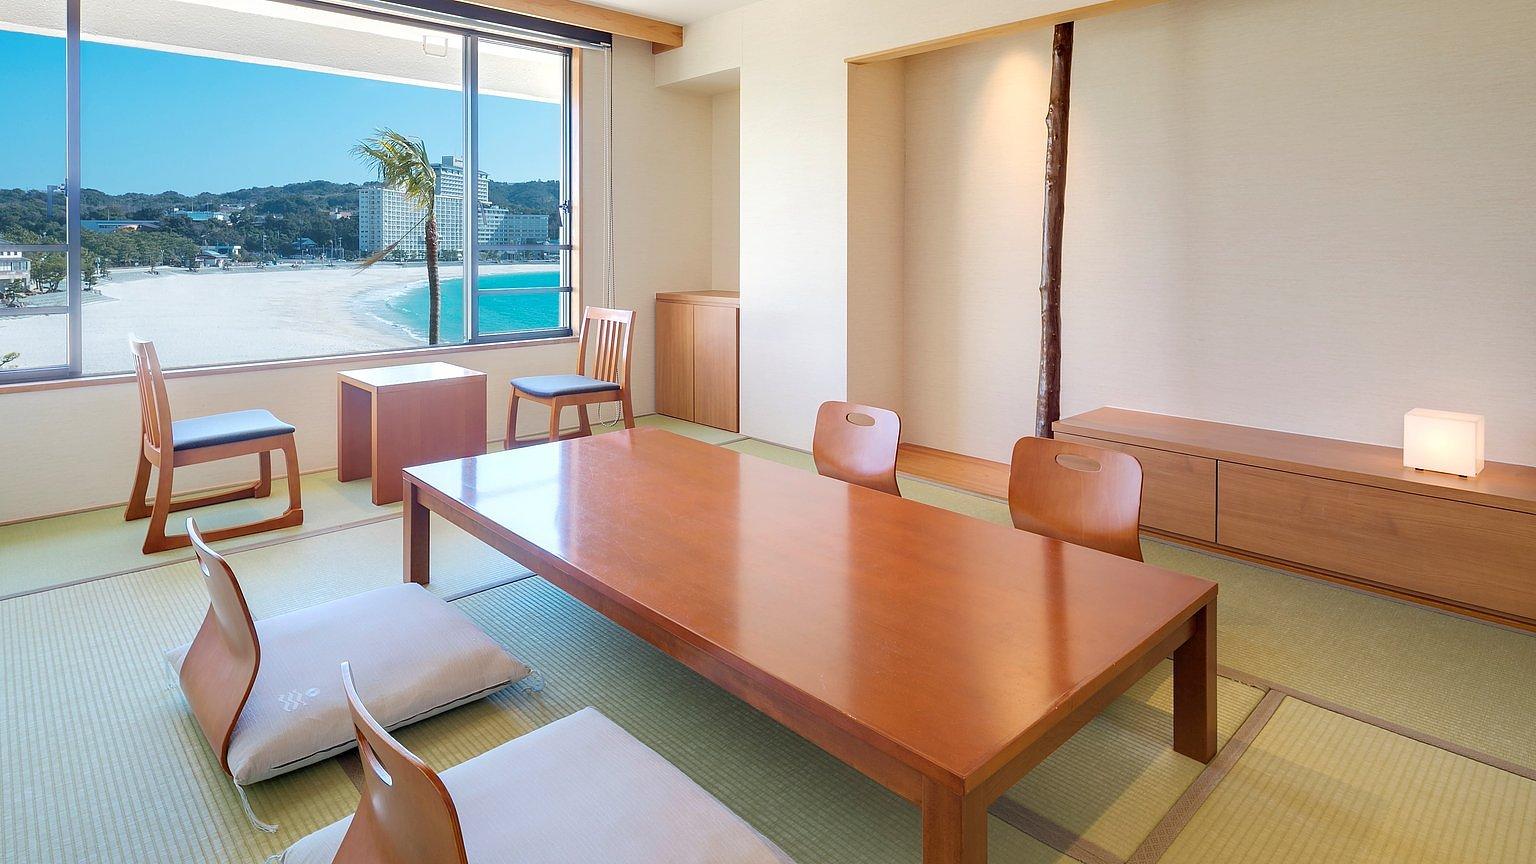 스탠다드 다다미 객실(다다미 10장) (Standard Japanese-style room (10 tatami mats)) - 시라라소 그랜드 호텔